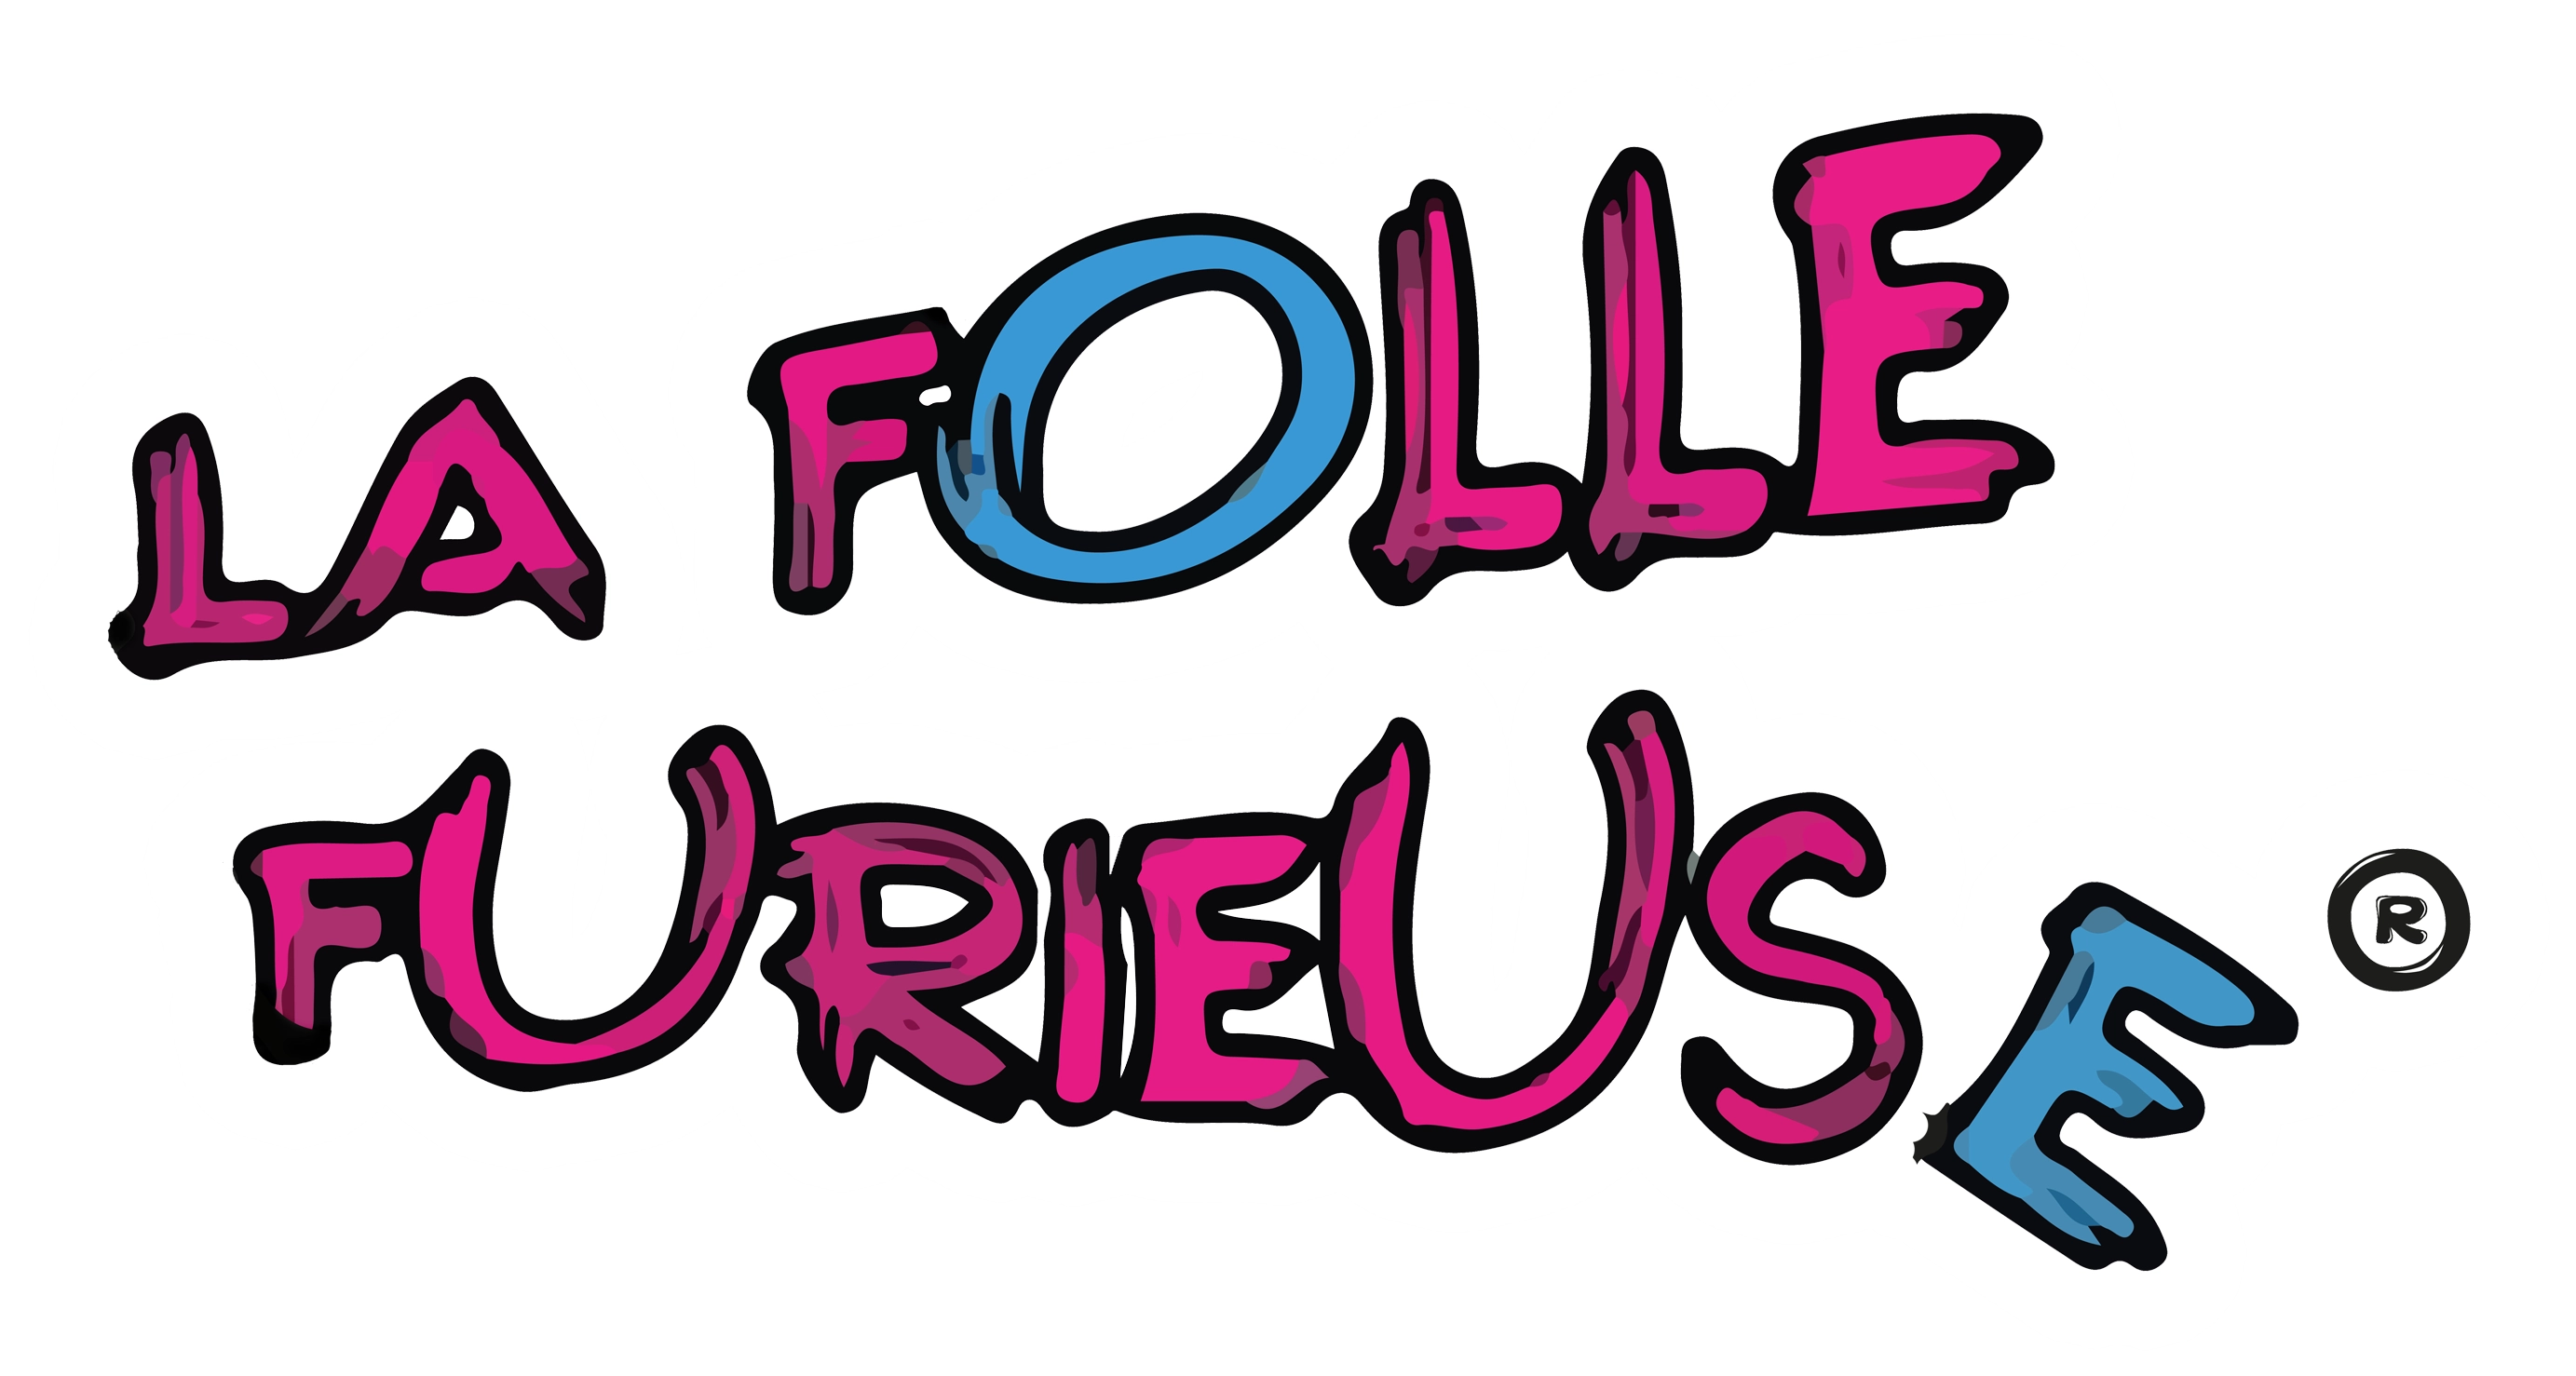 Logo La Folle Furieuse - formulaire de contact